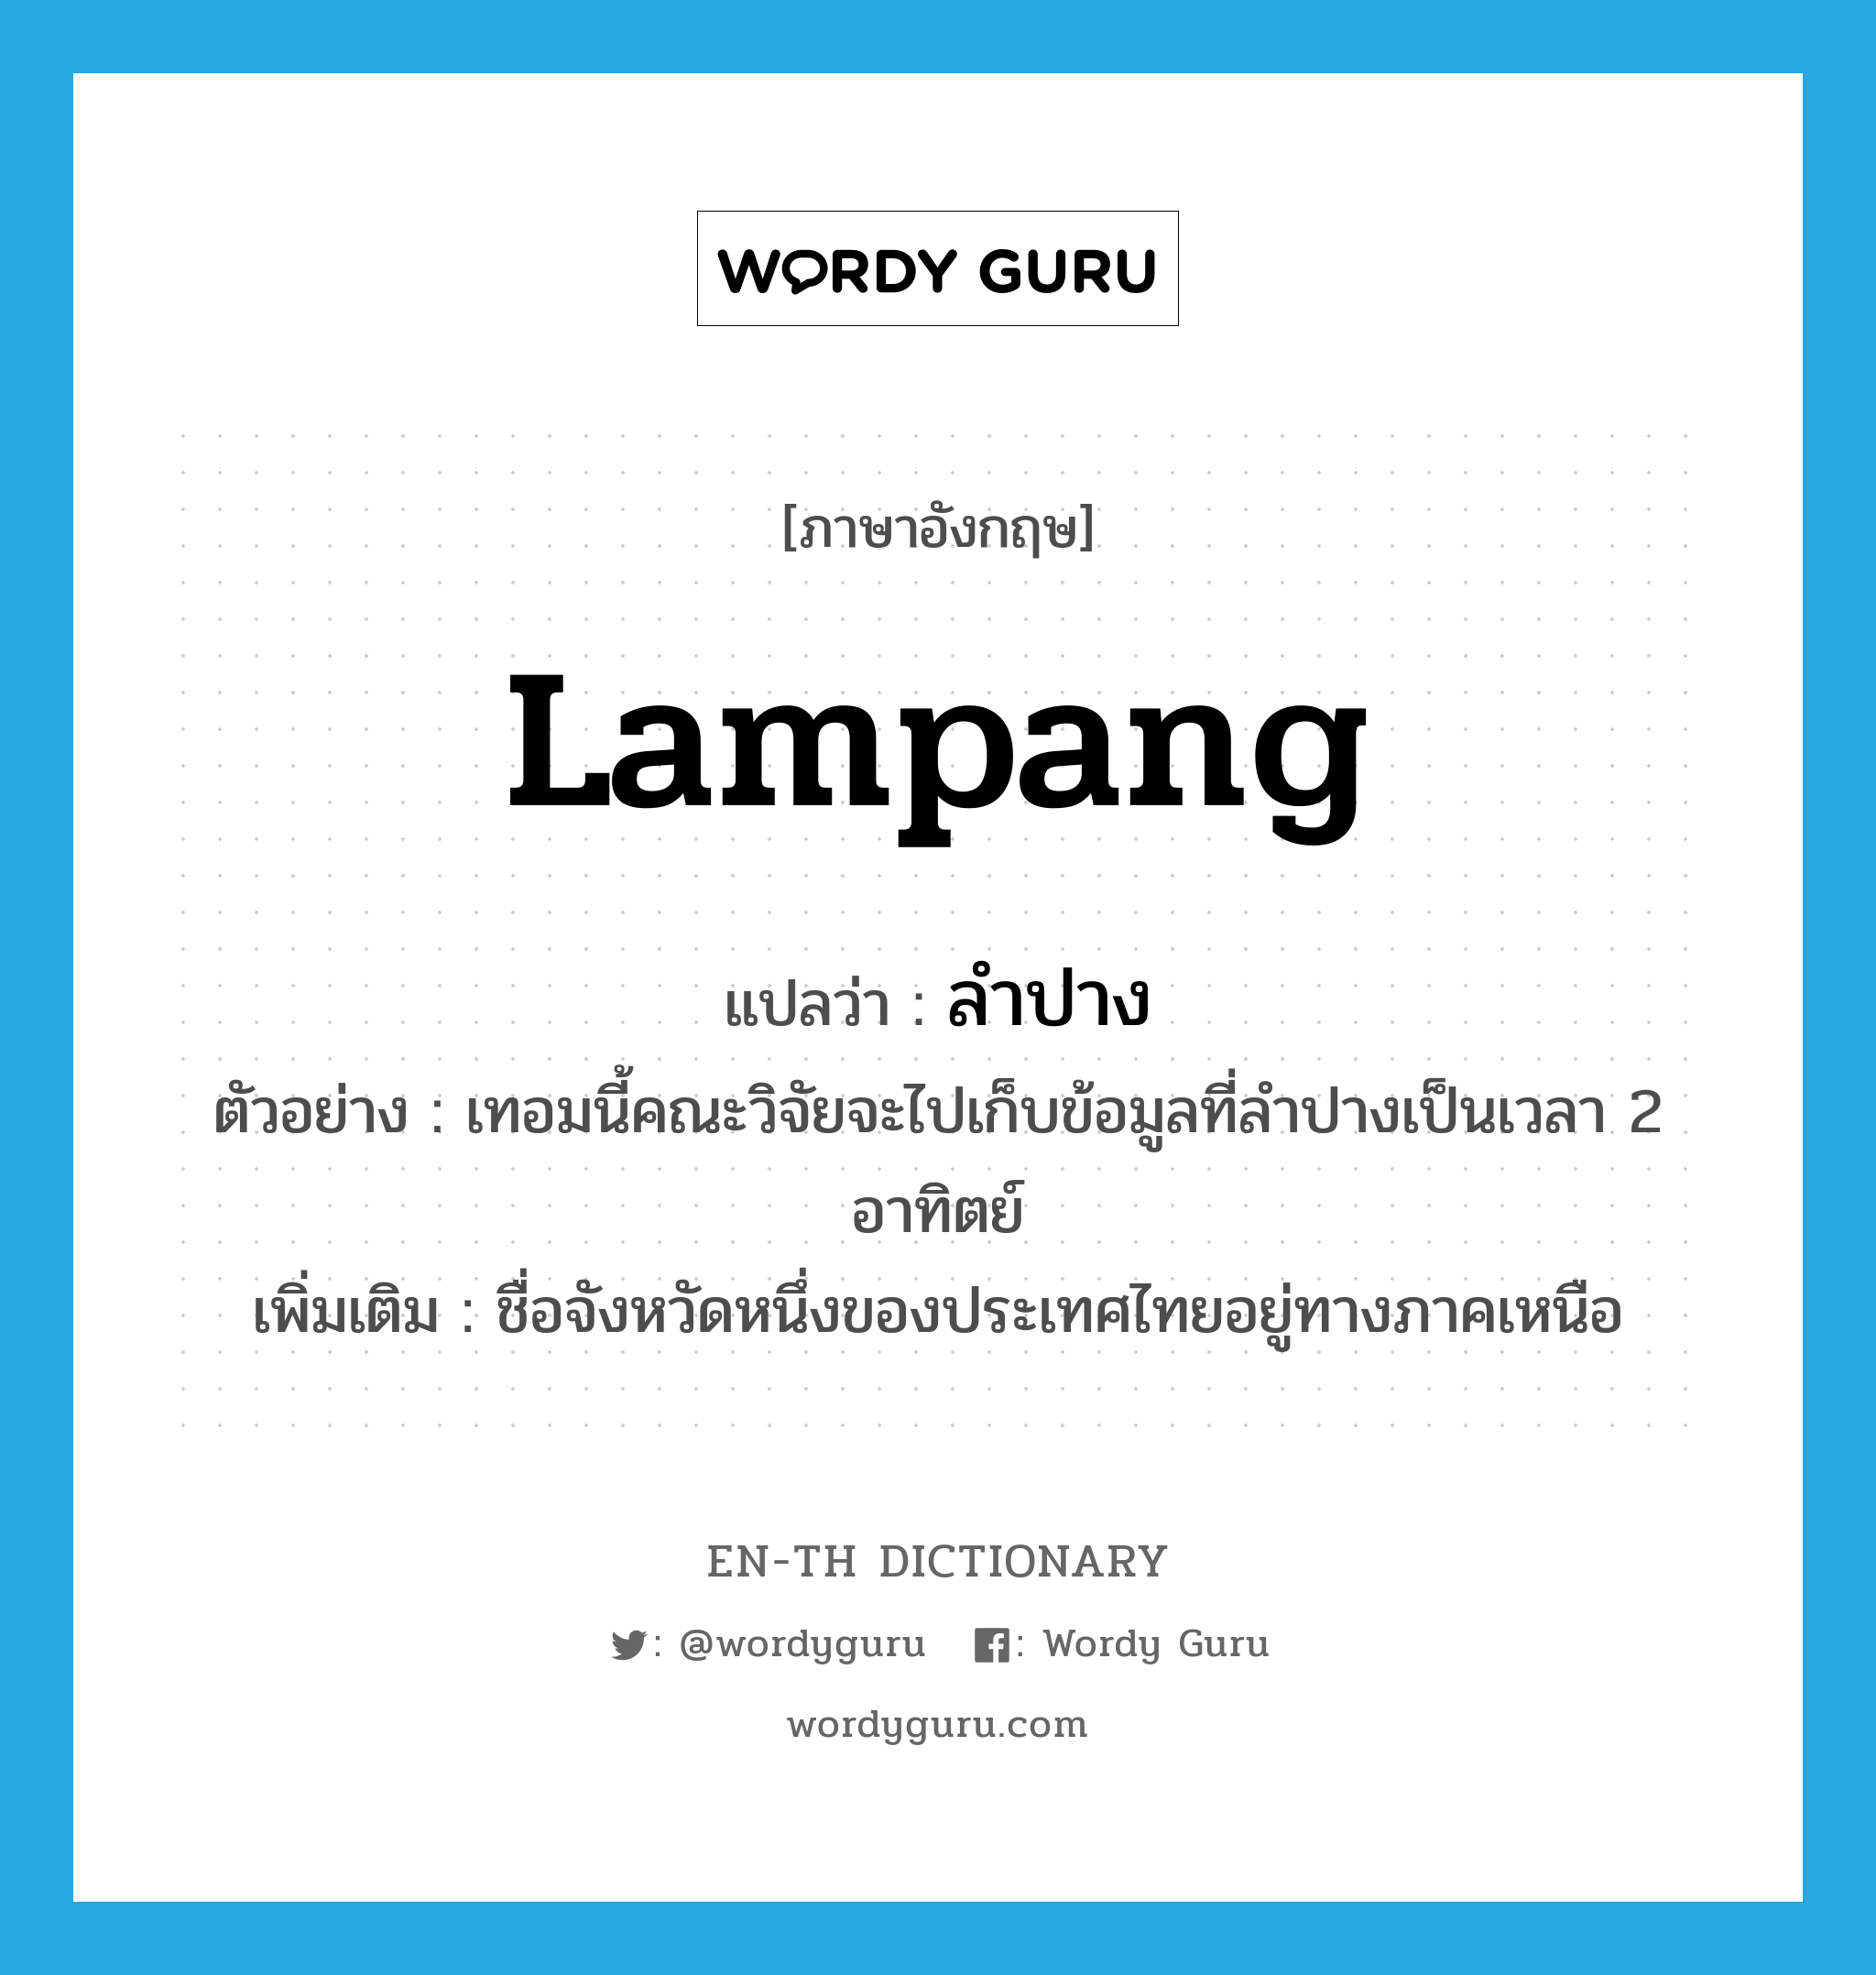 Lampang แปลว่า?, คำศัพท์ภาษาอังกฤษ Lampang แปลว่า ลำปาง ประเภท N ตัวอย่าง เทอมนี้คณะวิจัยจะไปเก็บข้อมูลที่ลำปางเป็นเวลา 2 อาทิตย์ เพิ่มเติม ชื่อจังหวัดหนึ่งของประเทศไทยอยู่ทางภาคเหนือ หมวด N